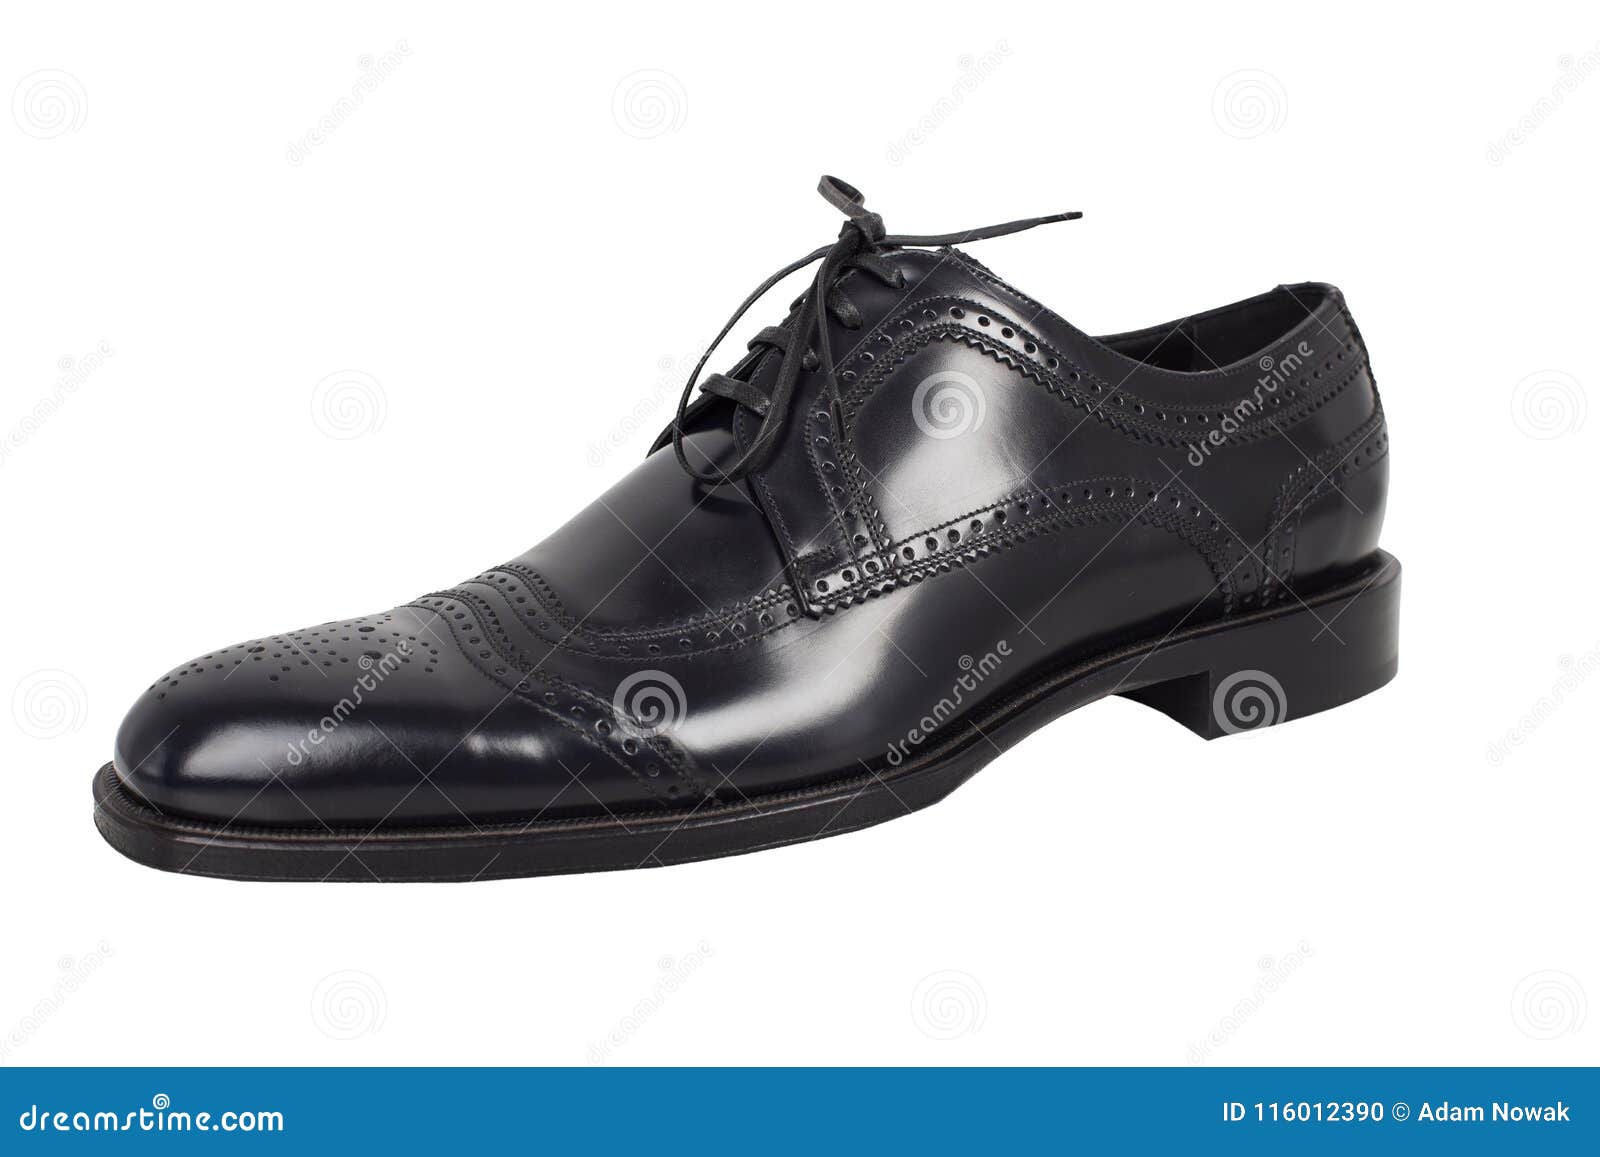 Elegant Black Shoes on a White Background. Stock Photo - Image of ...